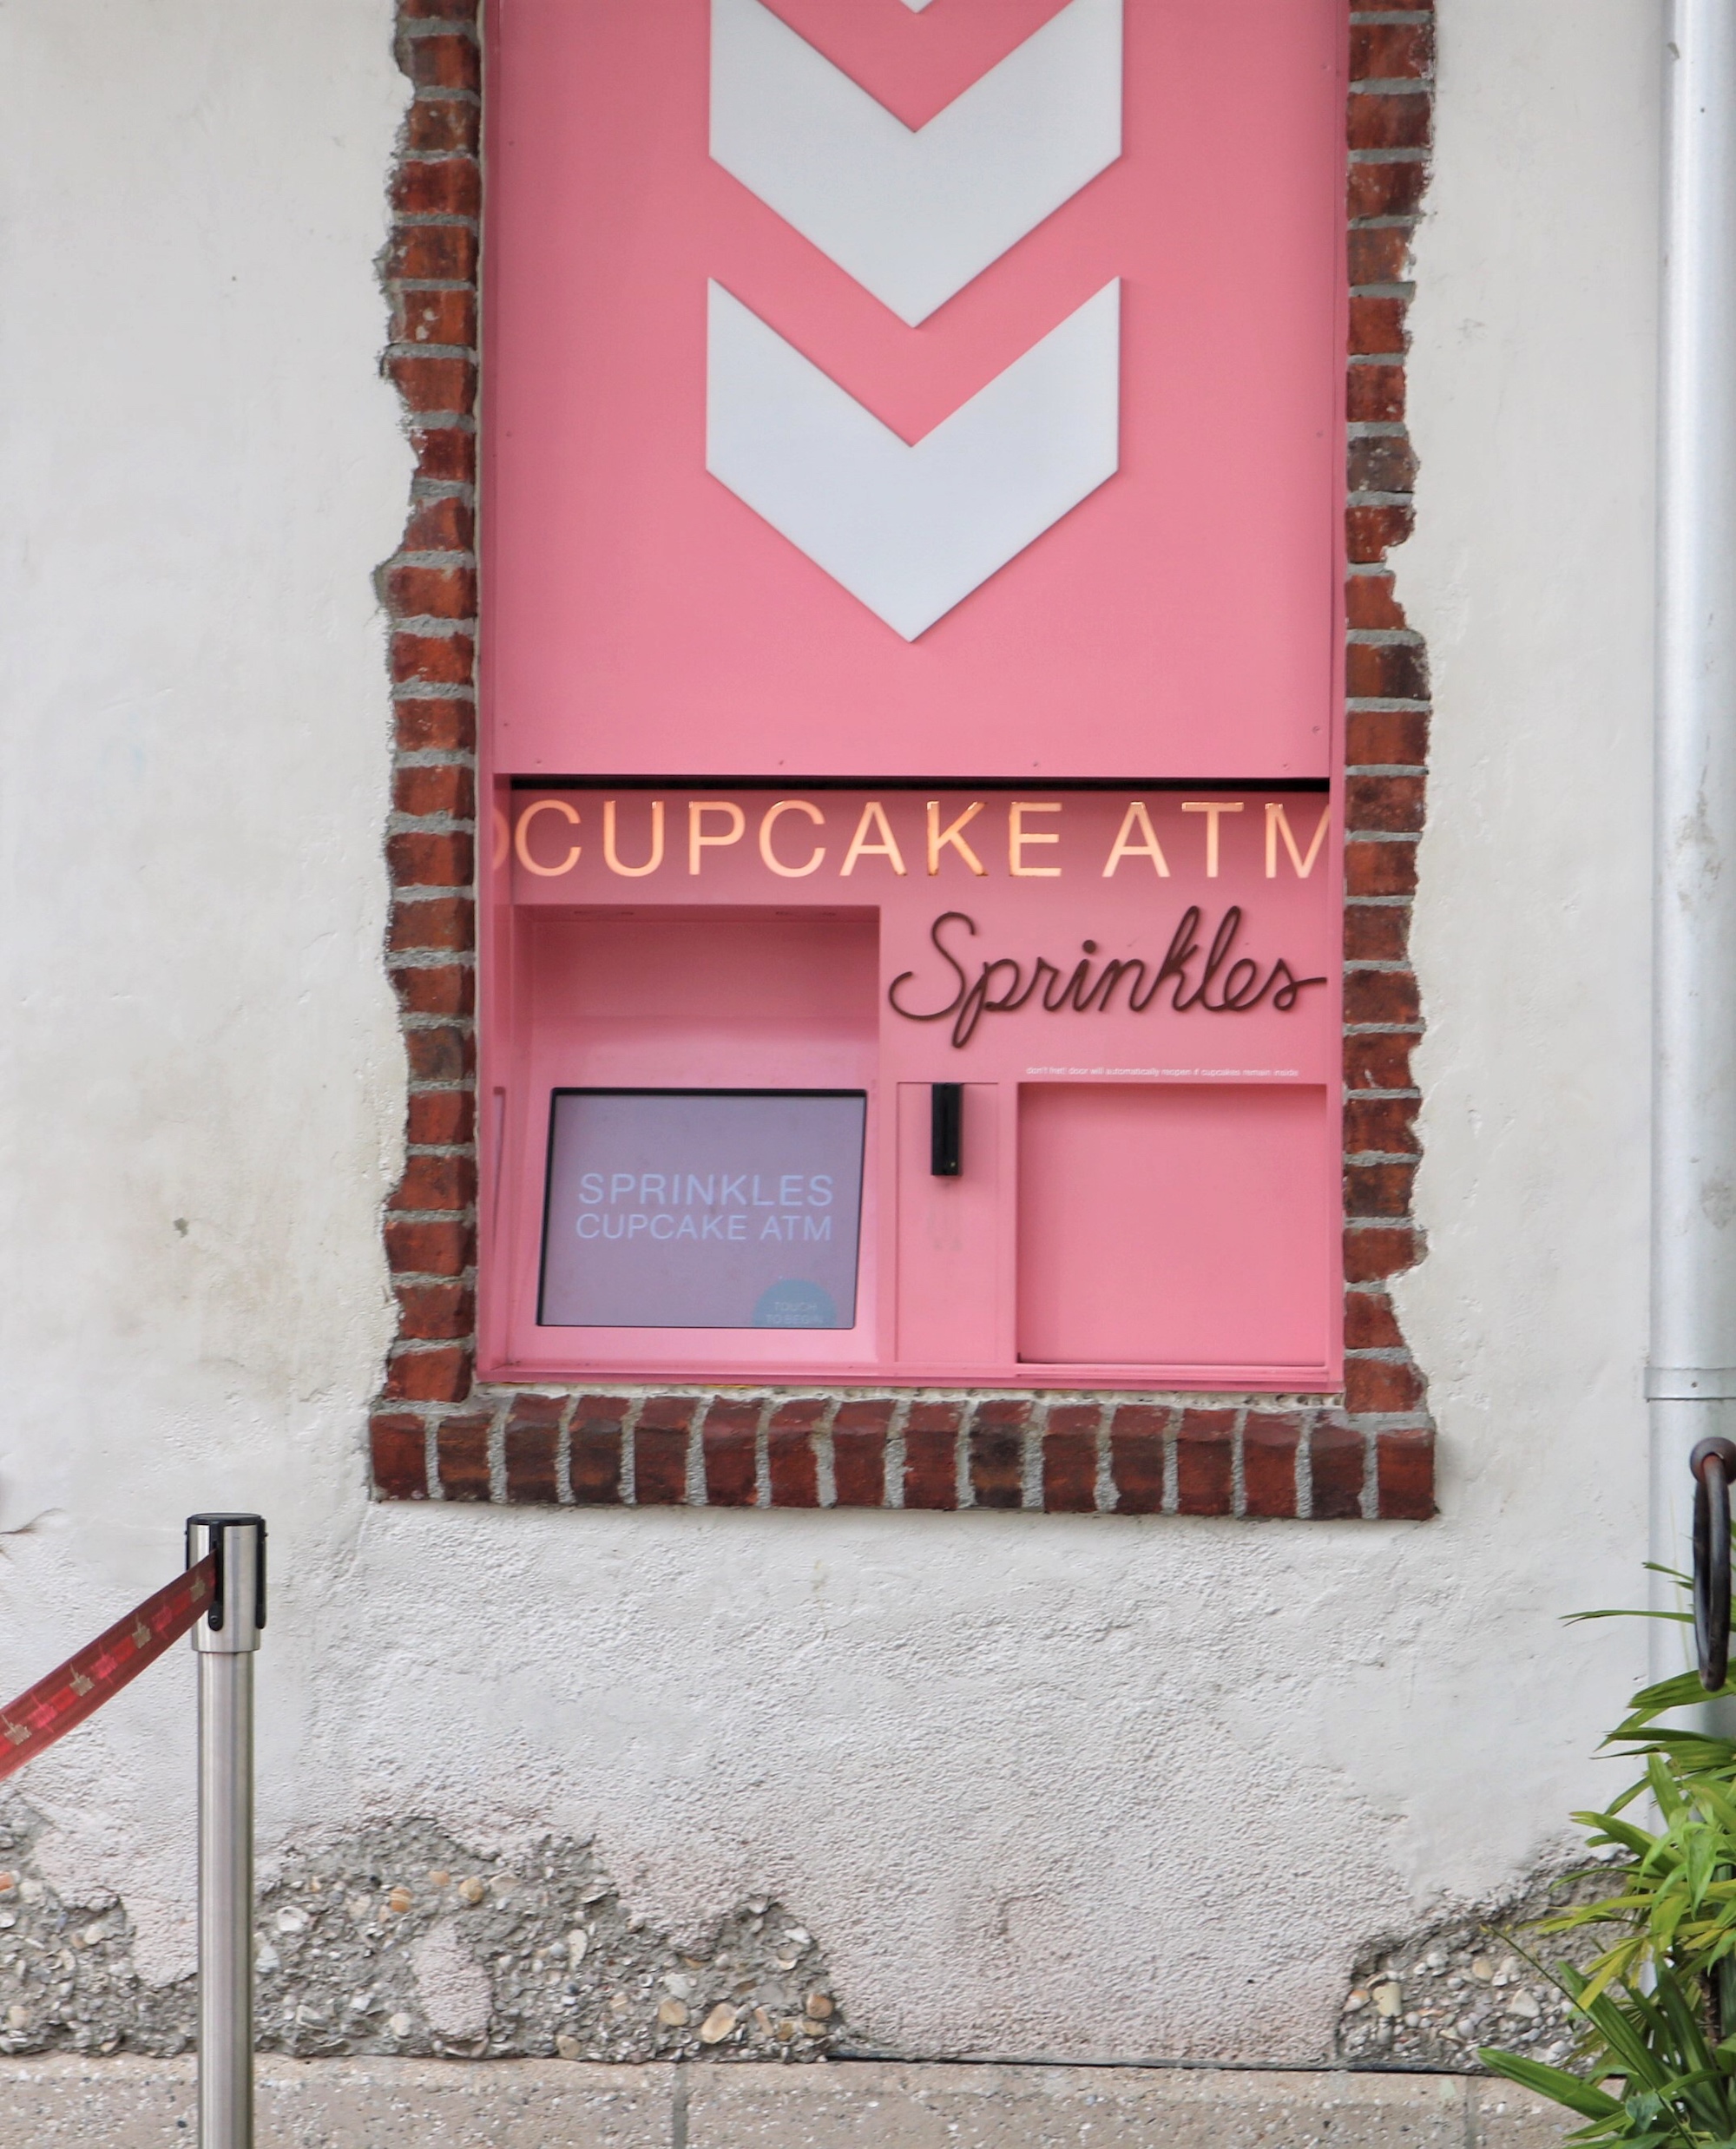 Sprinkles Cupcakes ATM at Disney Springs